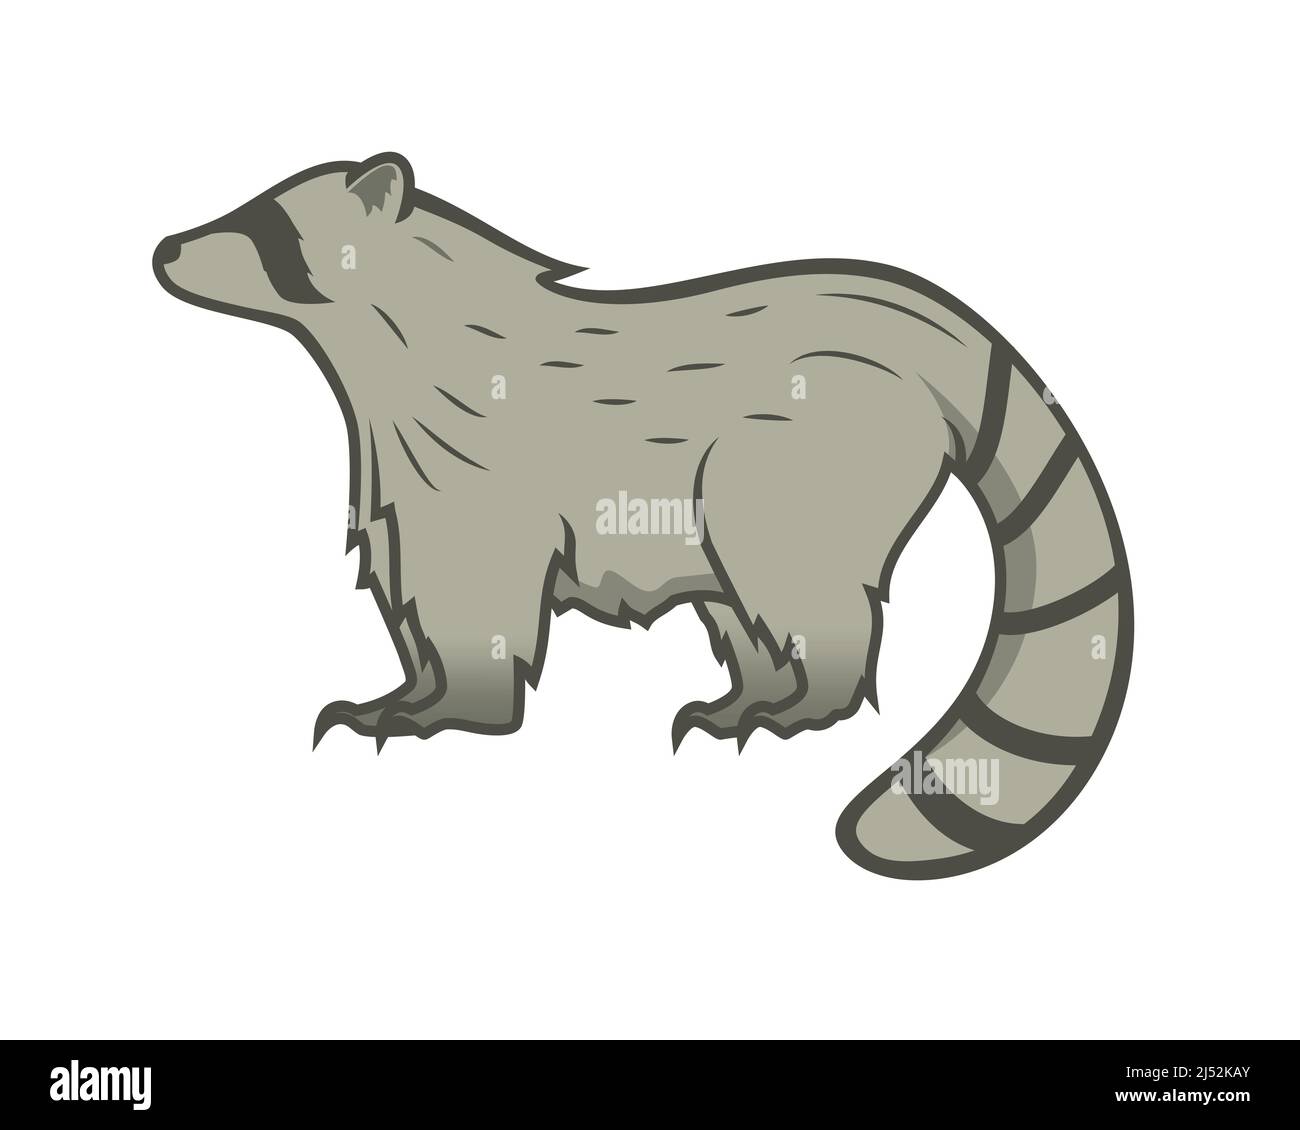 Disegno dettagliato di Raccoon con Gesture in piedi Illustrazione Vettoriale